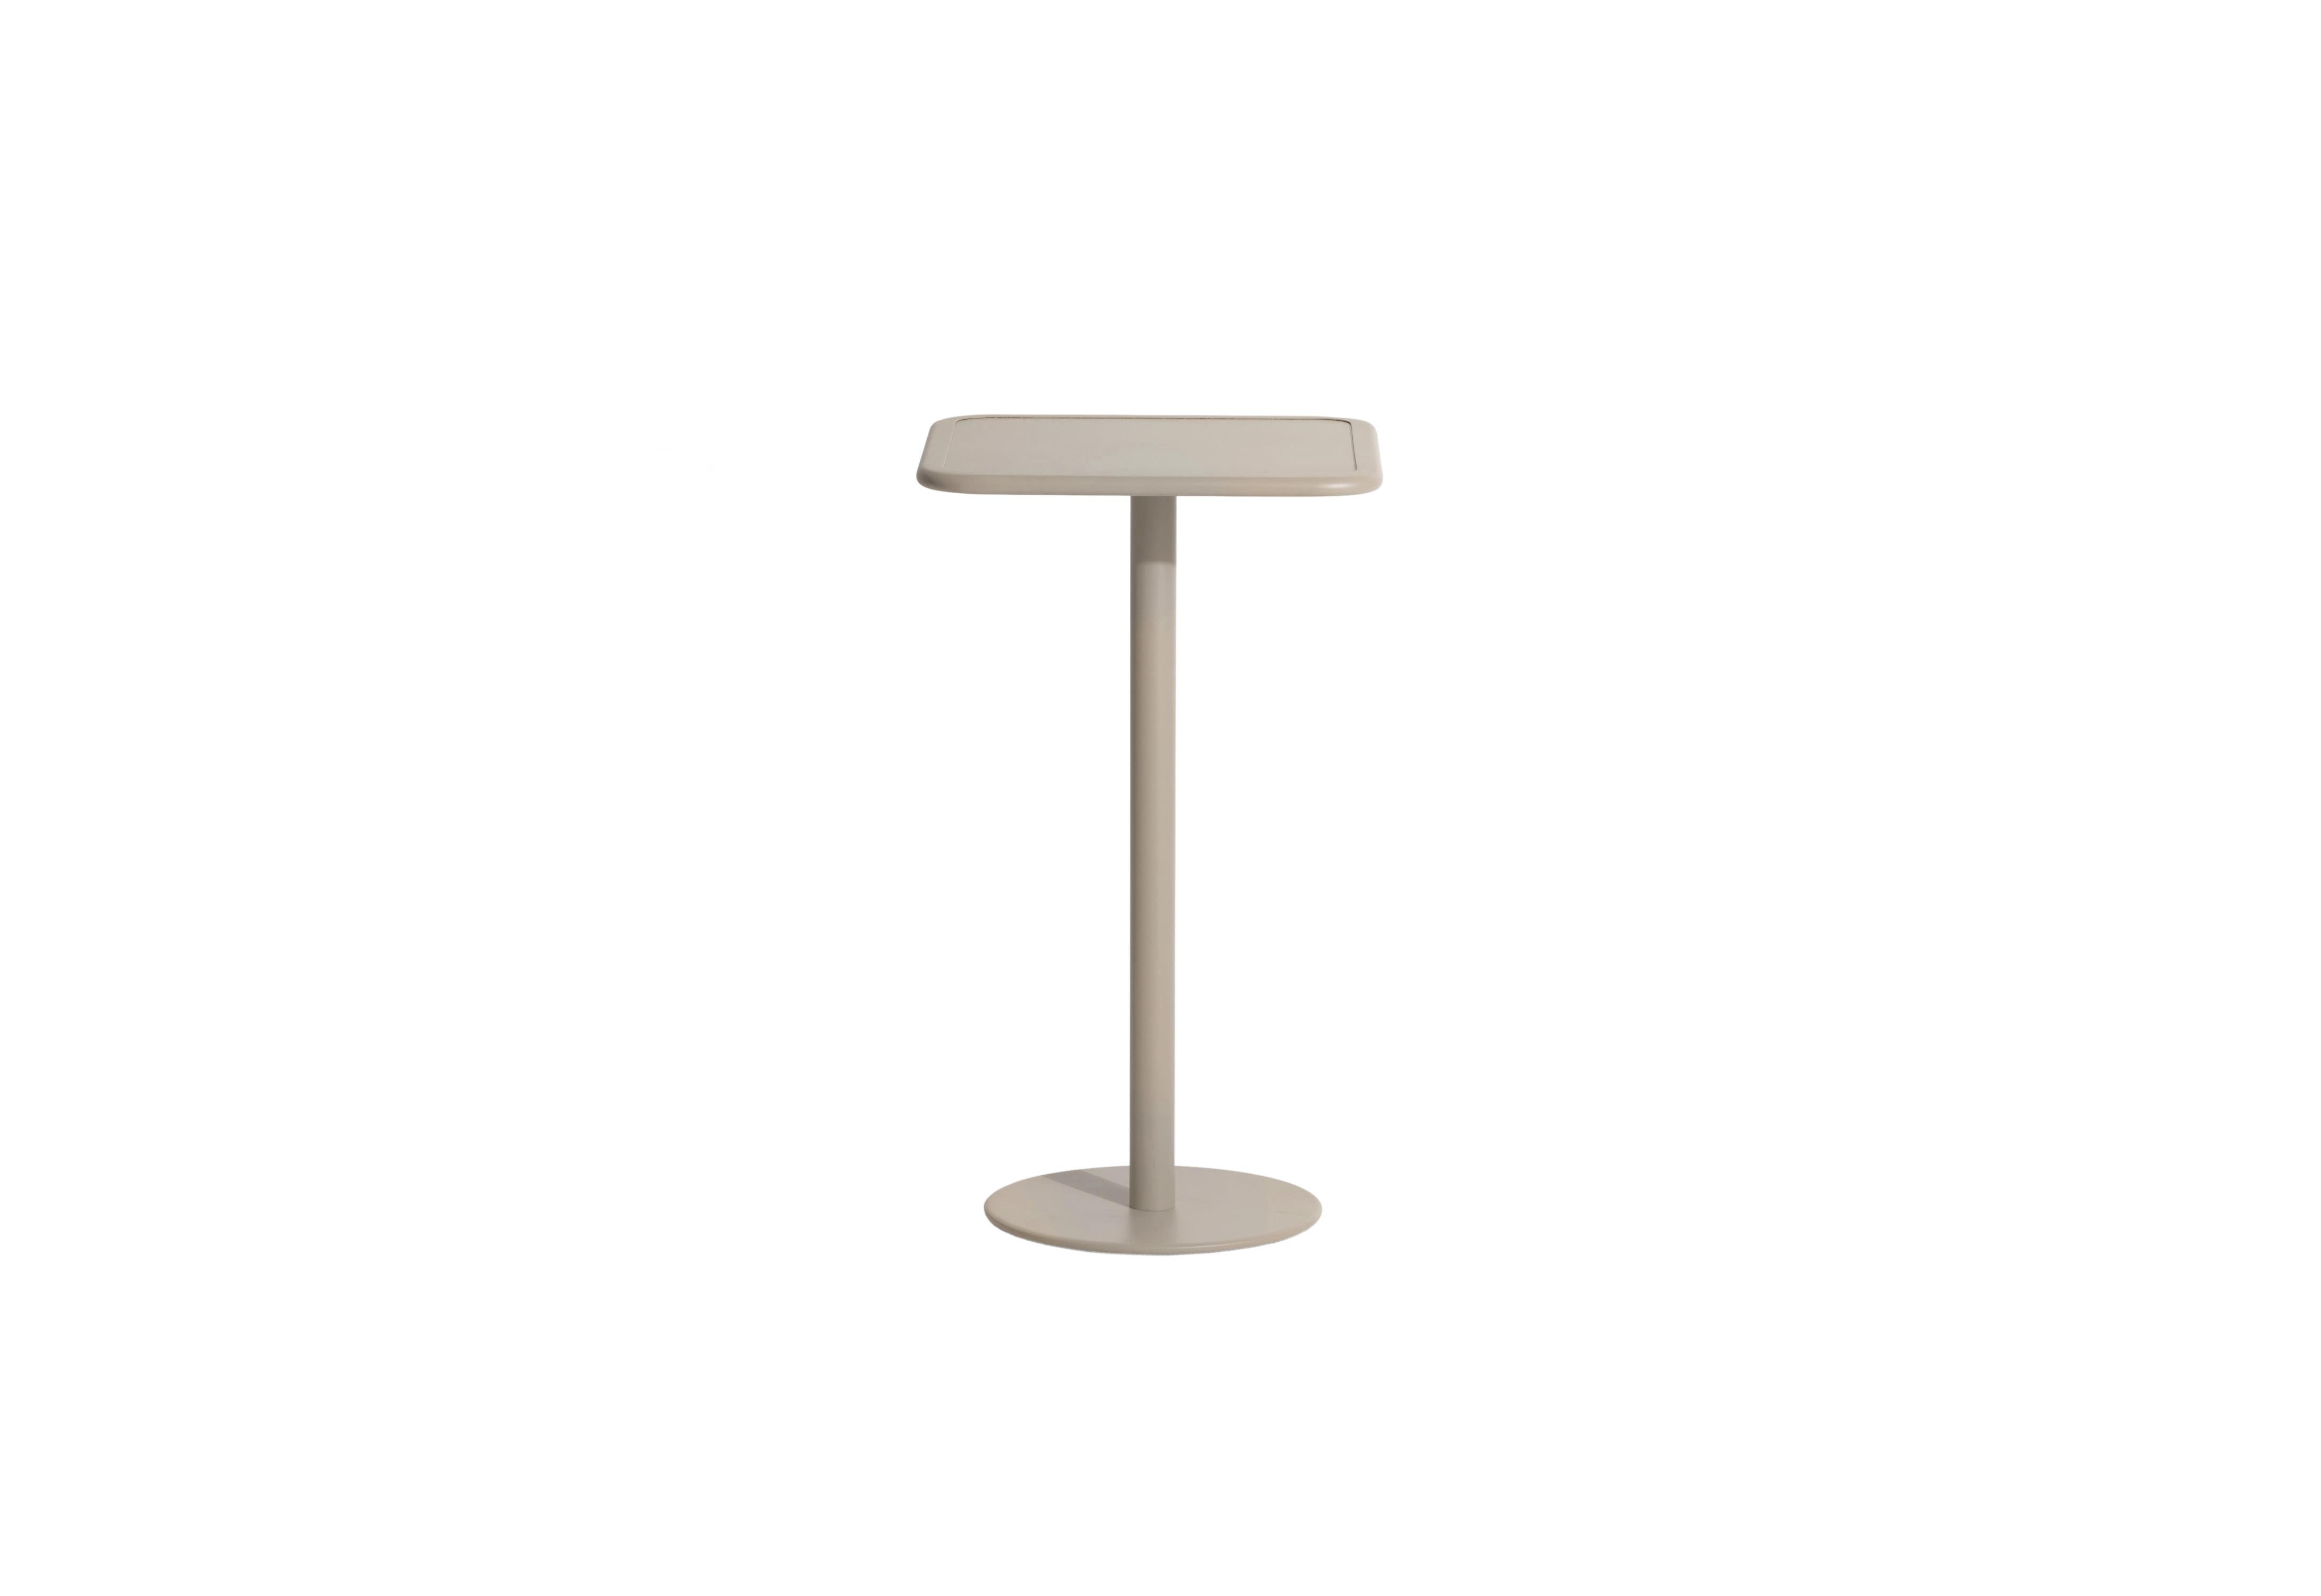 Petite Friture Week-End Square High Table in Dune Aluminium by Studio BrichetZiegler, 2017

Die Week-End-Kollektion besteht aus einer kompletten Palette von Außenmöbeln mit mattierter Epoxidharzlackierung mit Aluminiummaserung, die 18 Funktionen und